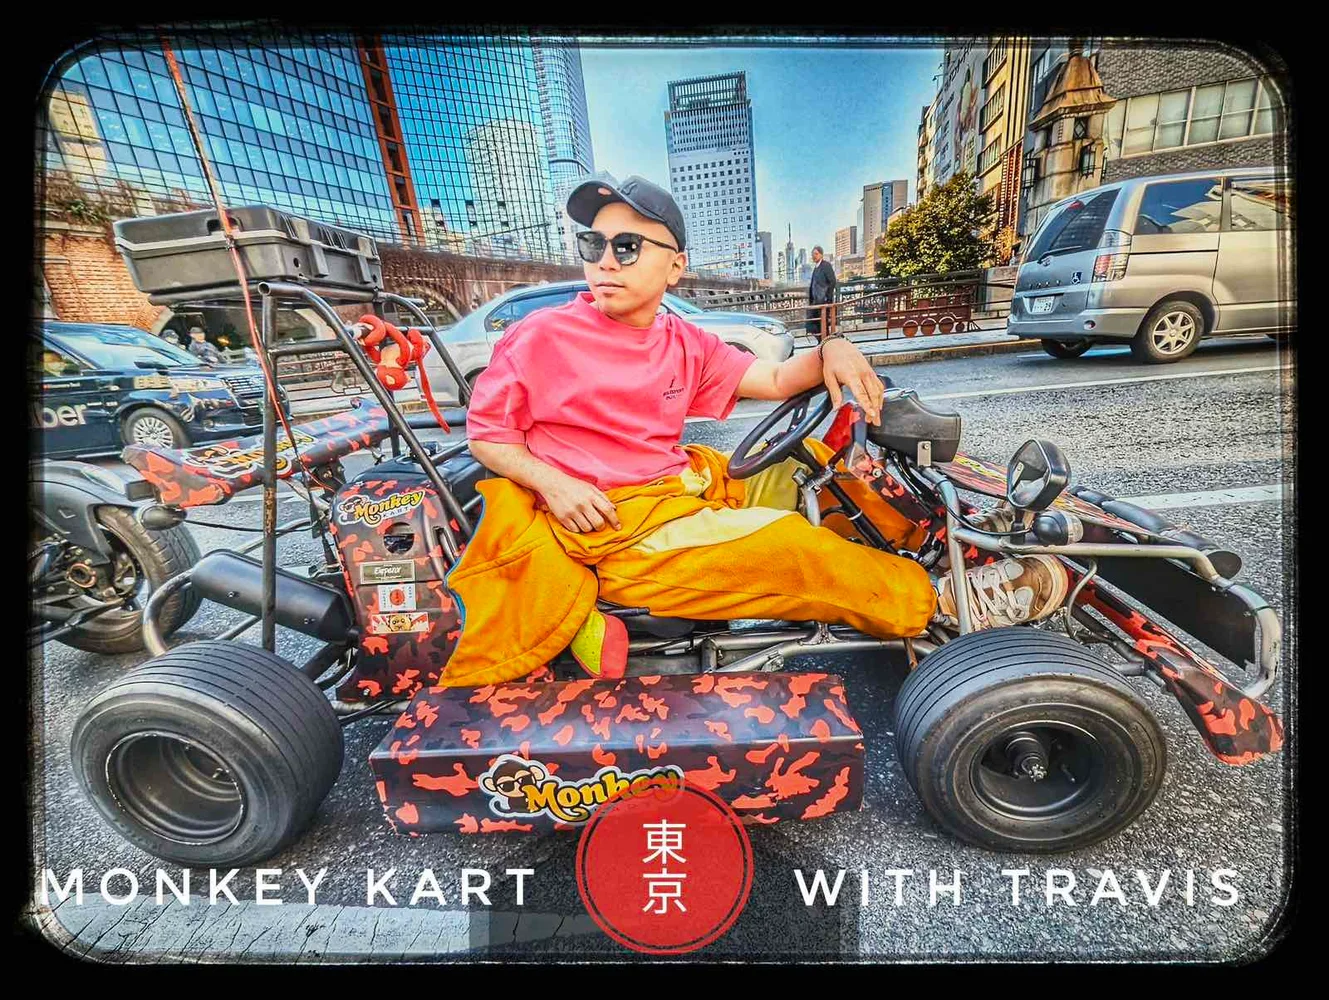 Book Asakusa Monkey Kart Tour on a Customized Go-Kart!